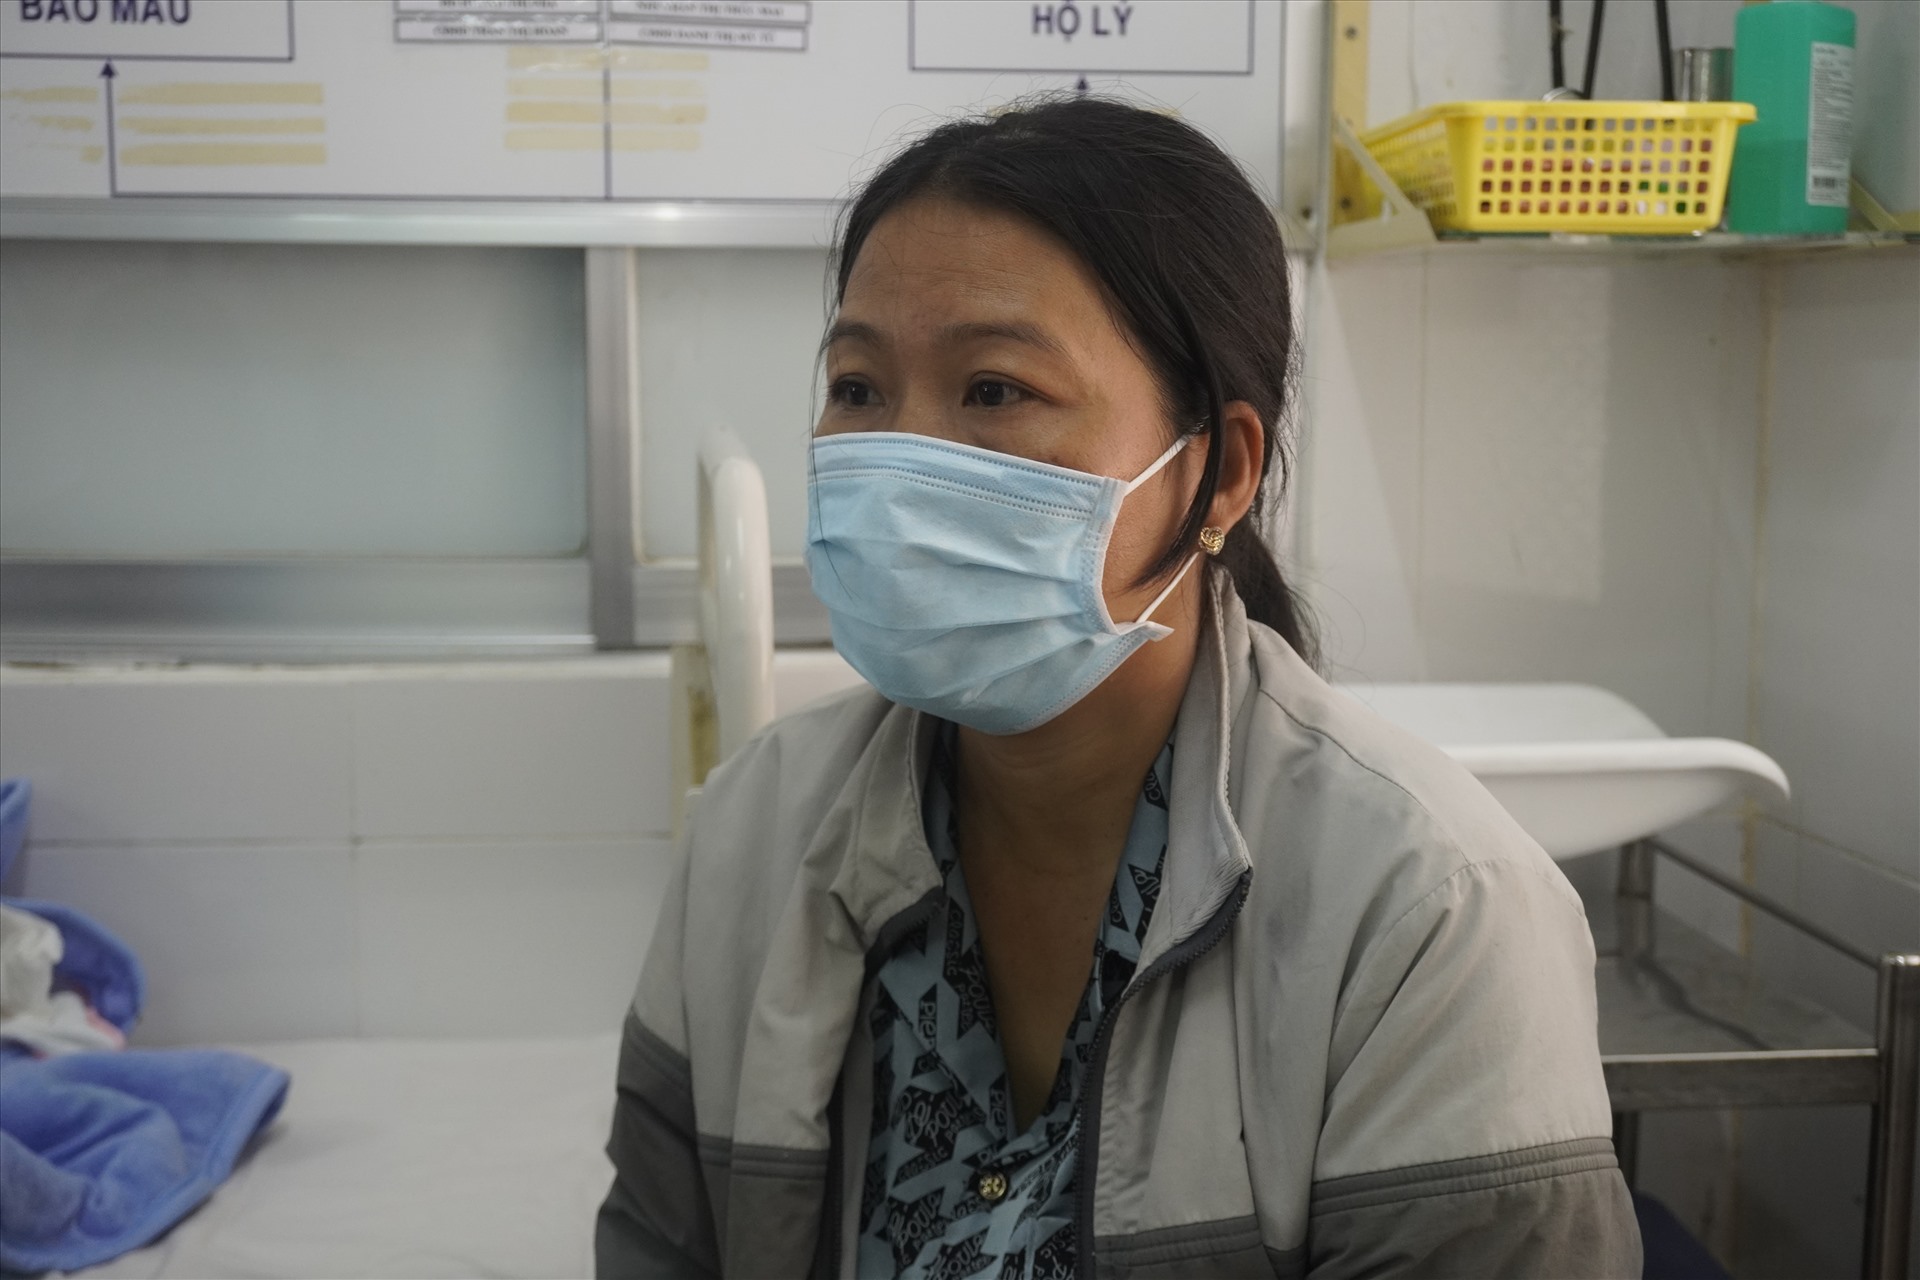 Bà Phan Ngọc Lành, người nhận nuôi bé gái bị bỏ rơi hiện đang chăm sóc bé tại bệnh viện đa khoa tỉnh Kiên Giang. Ảnh: Nguyên Anh